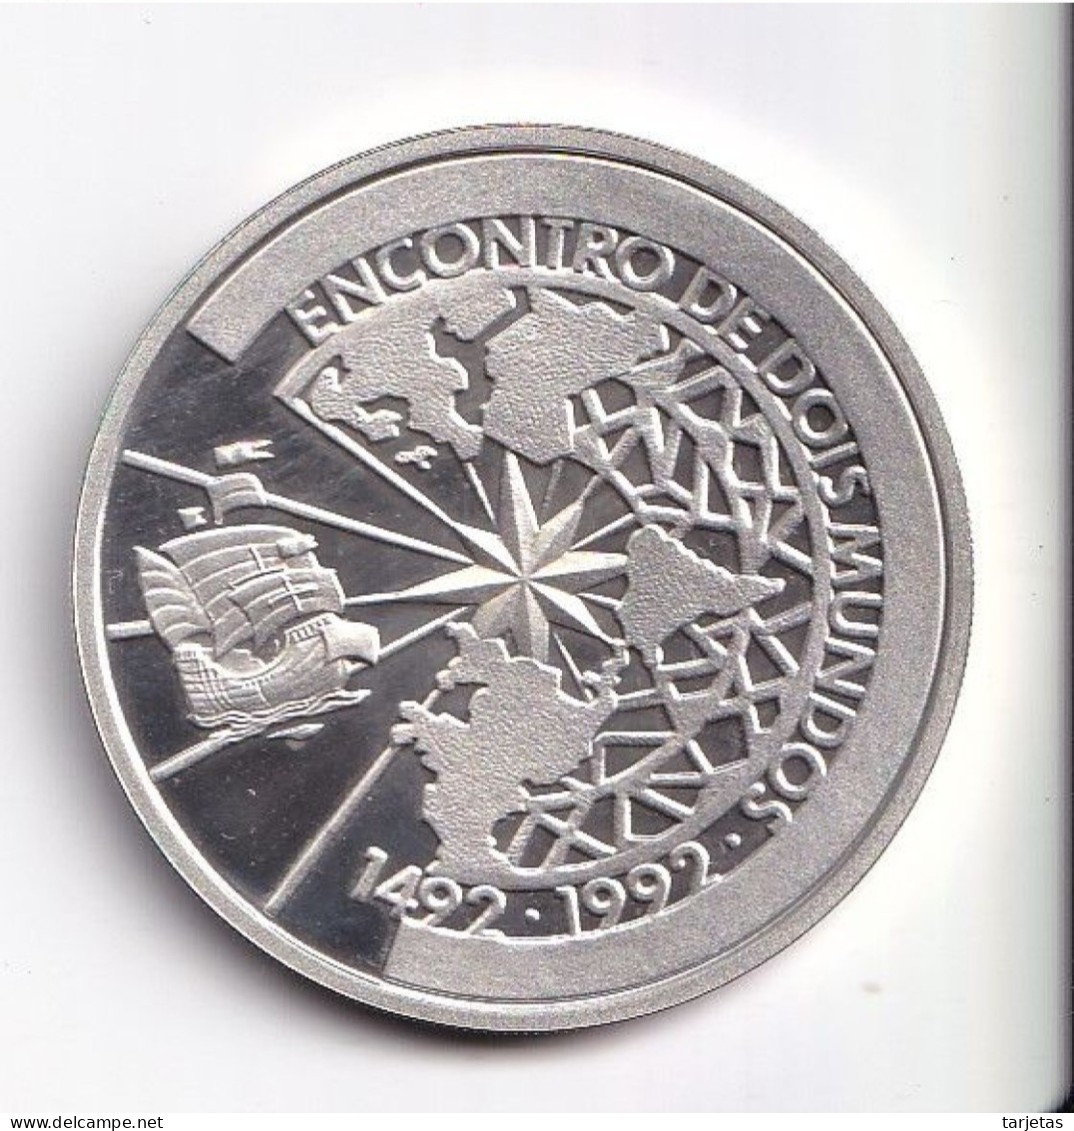 MONEDA PLATA DE BRASIL DE 500 CRUZEIROS DEL AÑO 1991 ENCUENTRO ENTRE DOS MUNDOS (COIN)(SILVER-ARGENT) - Ecuador